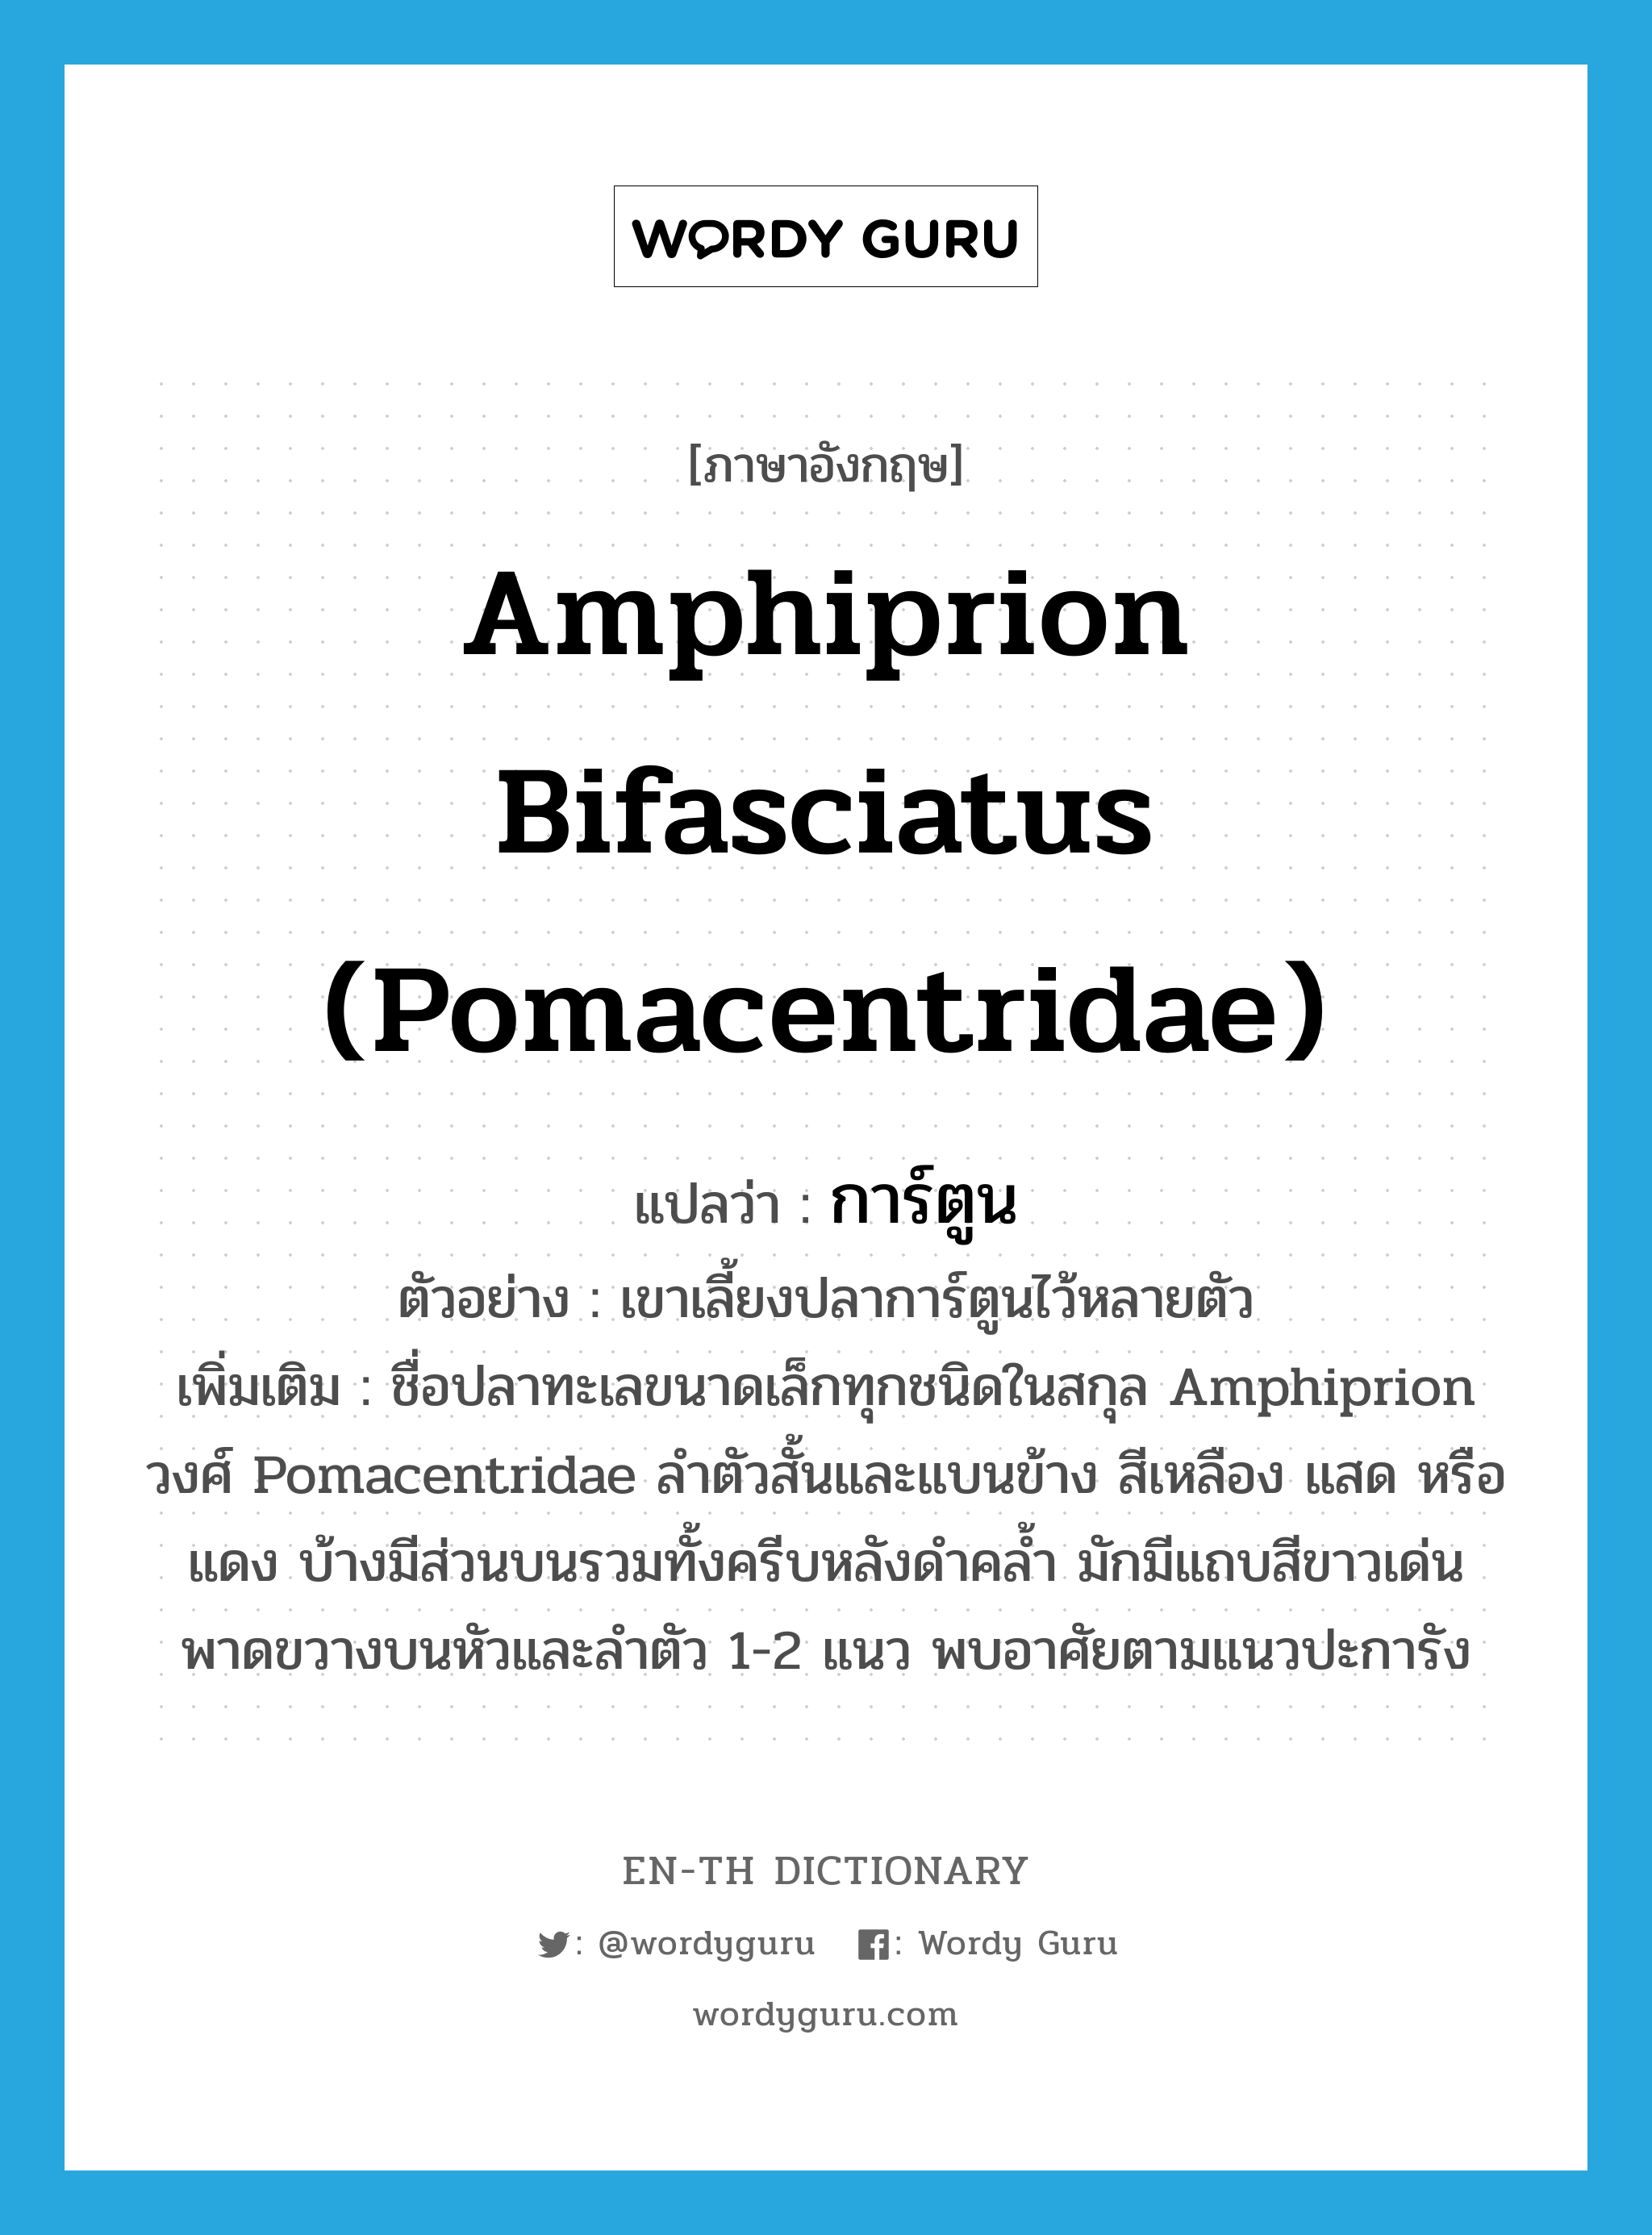 Amphiprion bifasciatus (Pomacentridae) แปลว่า?, คำศัพท์ภาษาอังกฤษ Amphiprion bifasciatus (Pomacentridae) แปลว่า การ์ตูน ประเภท N ตัวอย่าง เขาเลี้ยงปลาการ์ตูนไว้หลายตัว เพิ่มเติม ชื่อปลาทะเลขนาดเล็กทุกชนิดในสกุล Amphiprion วงศ์ Pomacentridae ลำตัวสั้นและแบนข้าง สีเหลือง แสด หรือแดง บ้างมีส่วนบนรวมทั้งครีบหลังดำคล้ำ มักมีแถบสีขาวเด่นพาดขวางบนหัวและลำตัว 1-2 แนว พบอาศัยตามแนวปะการัง หมวด N